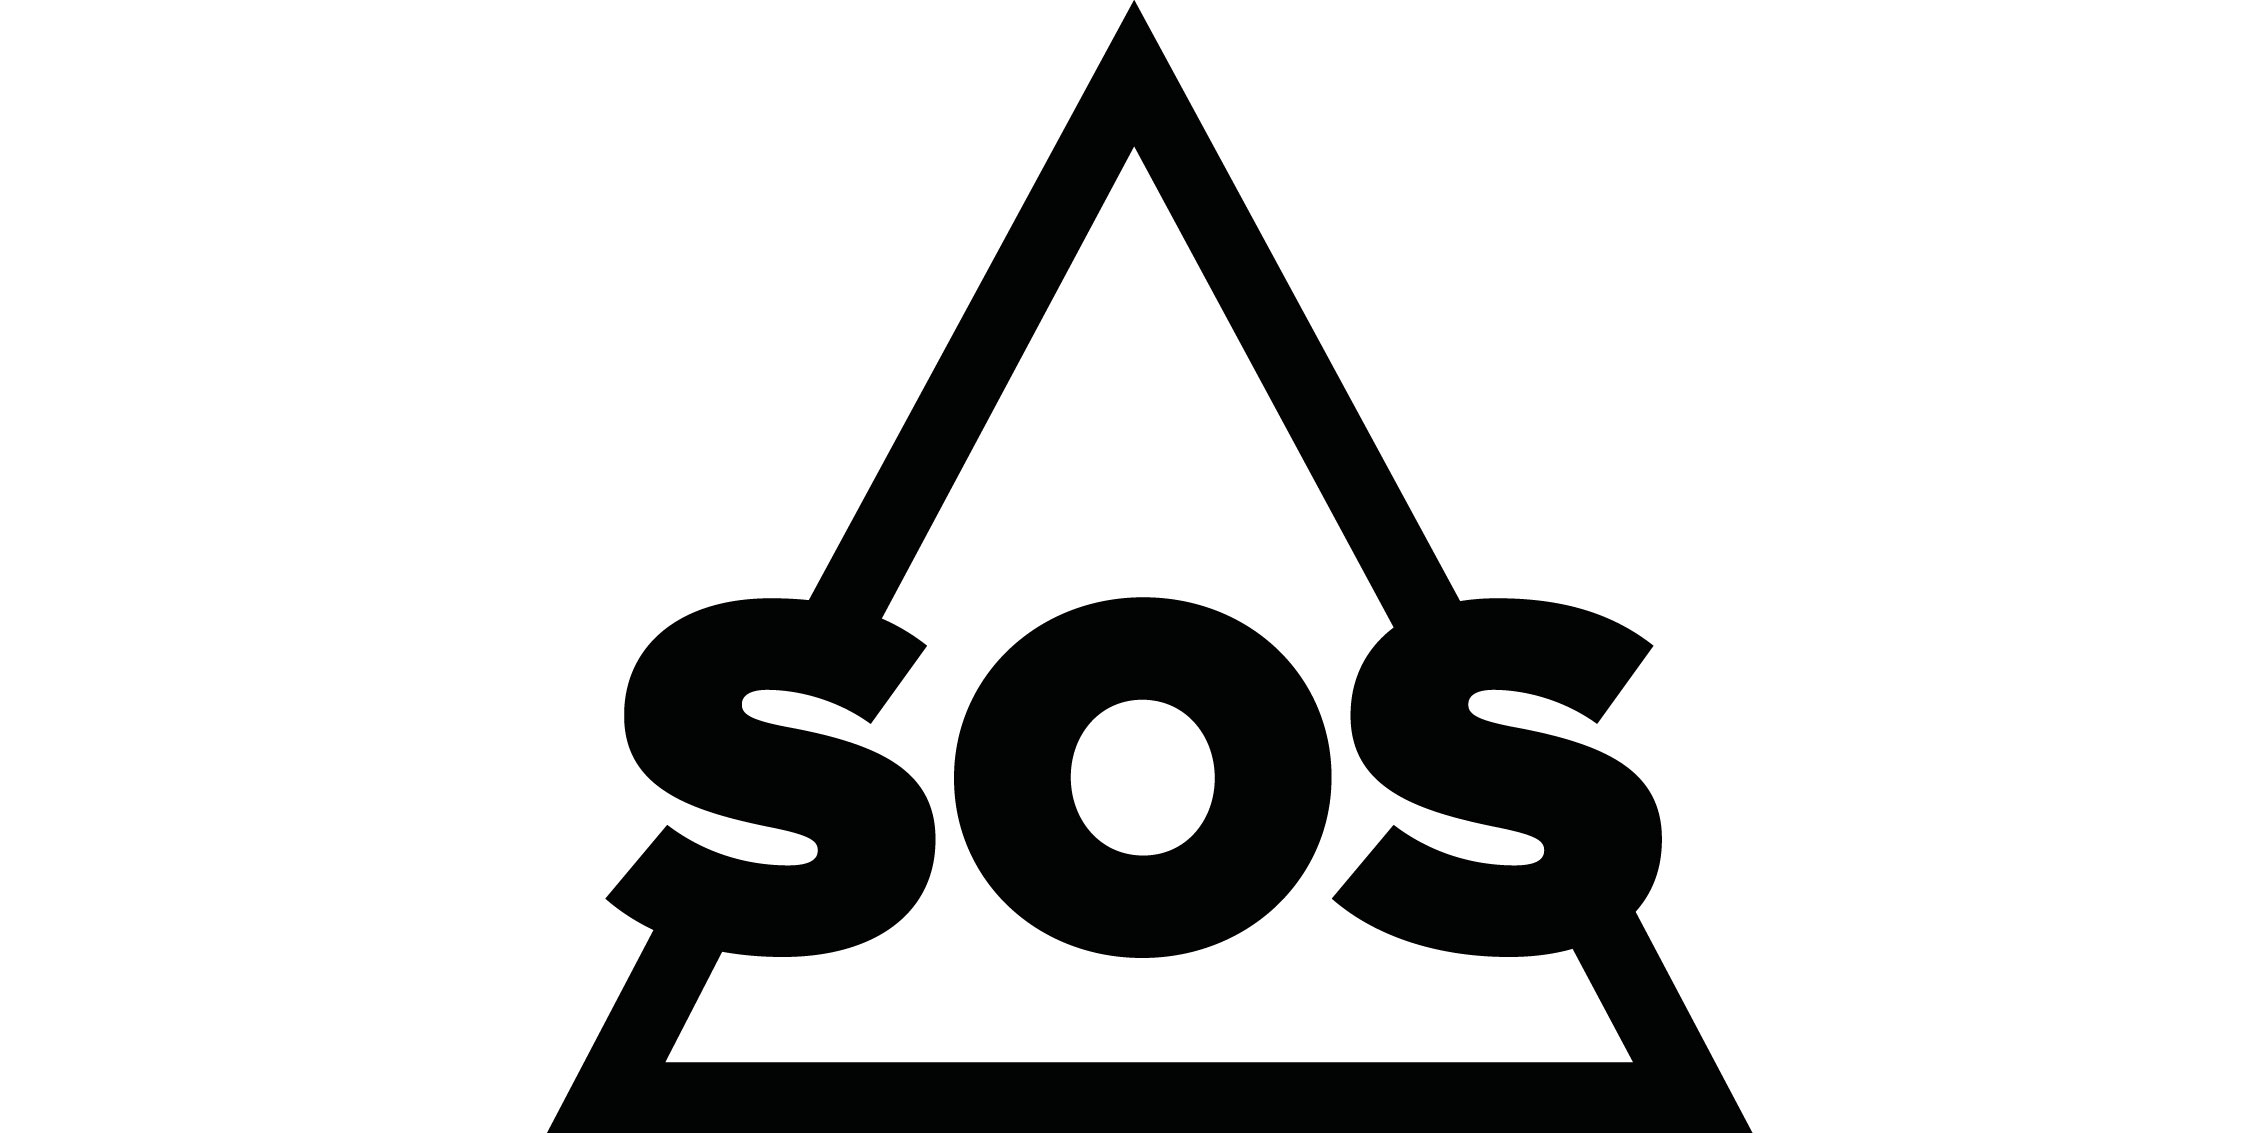 SOS Sportswear - online kaufen bei